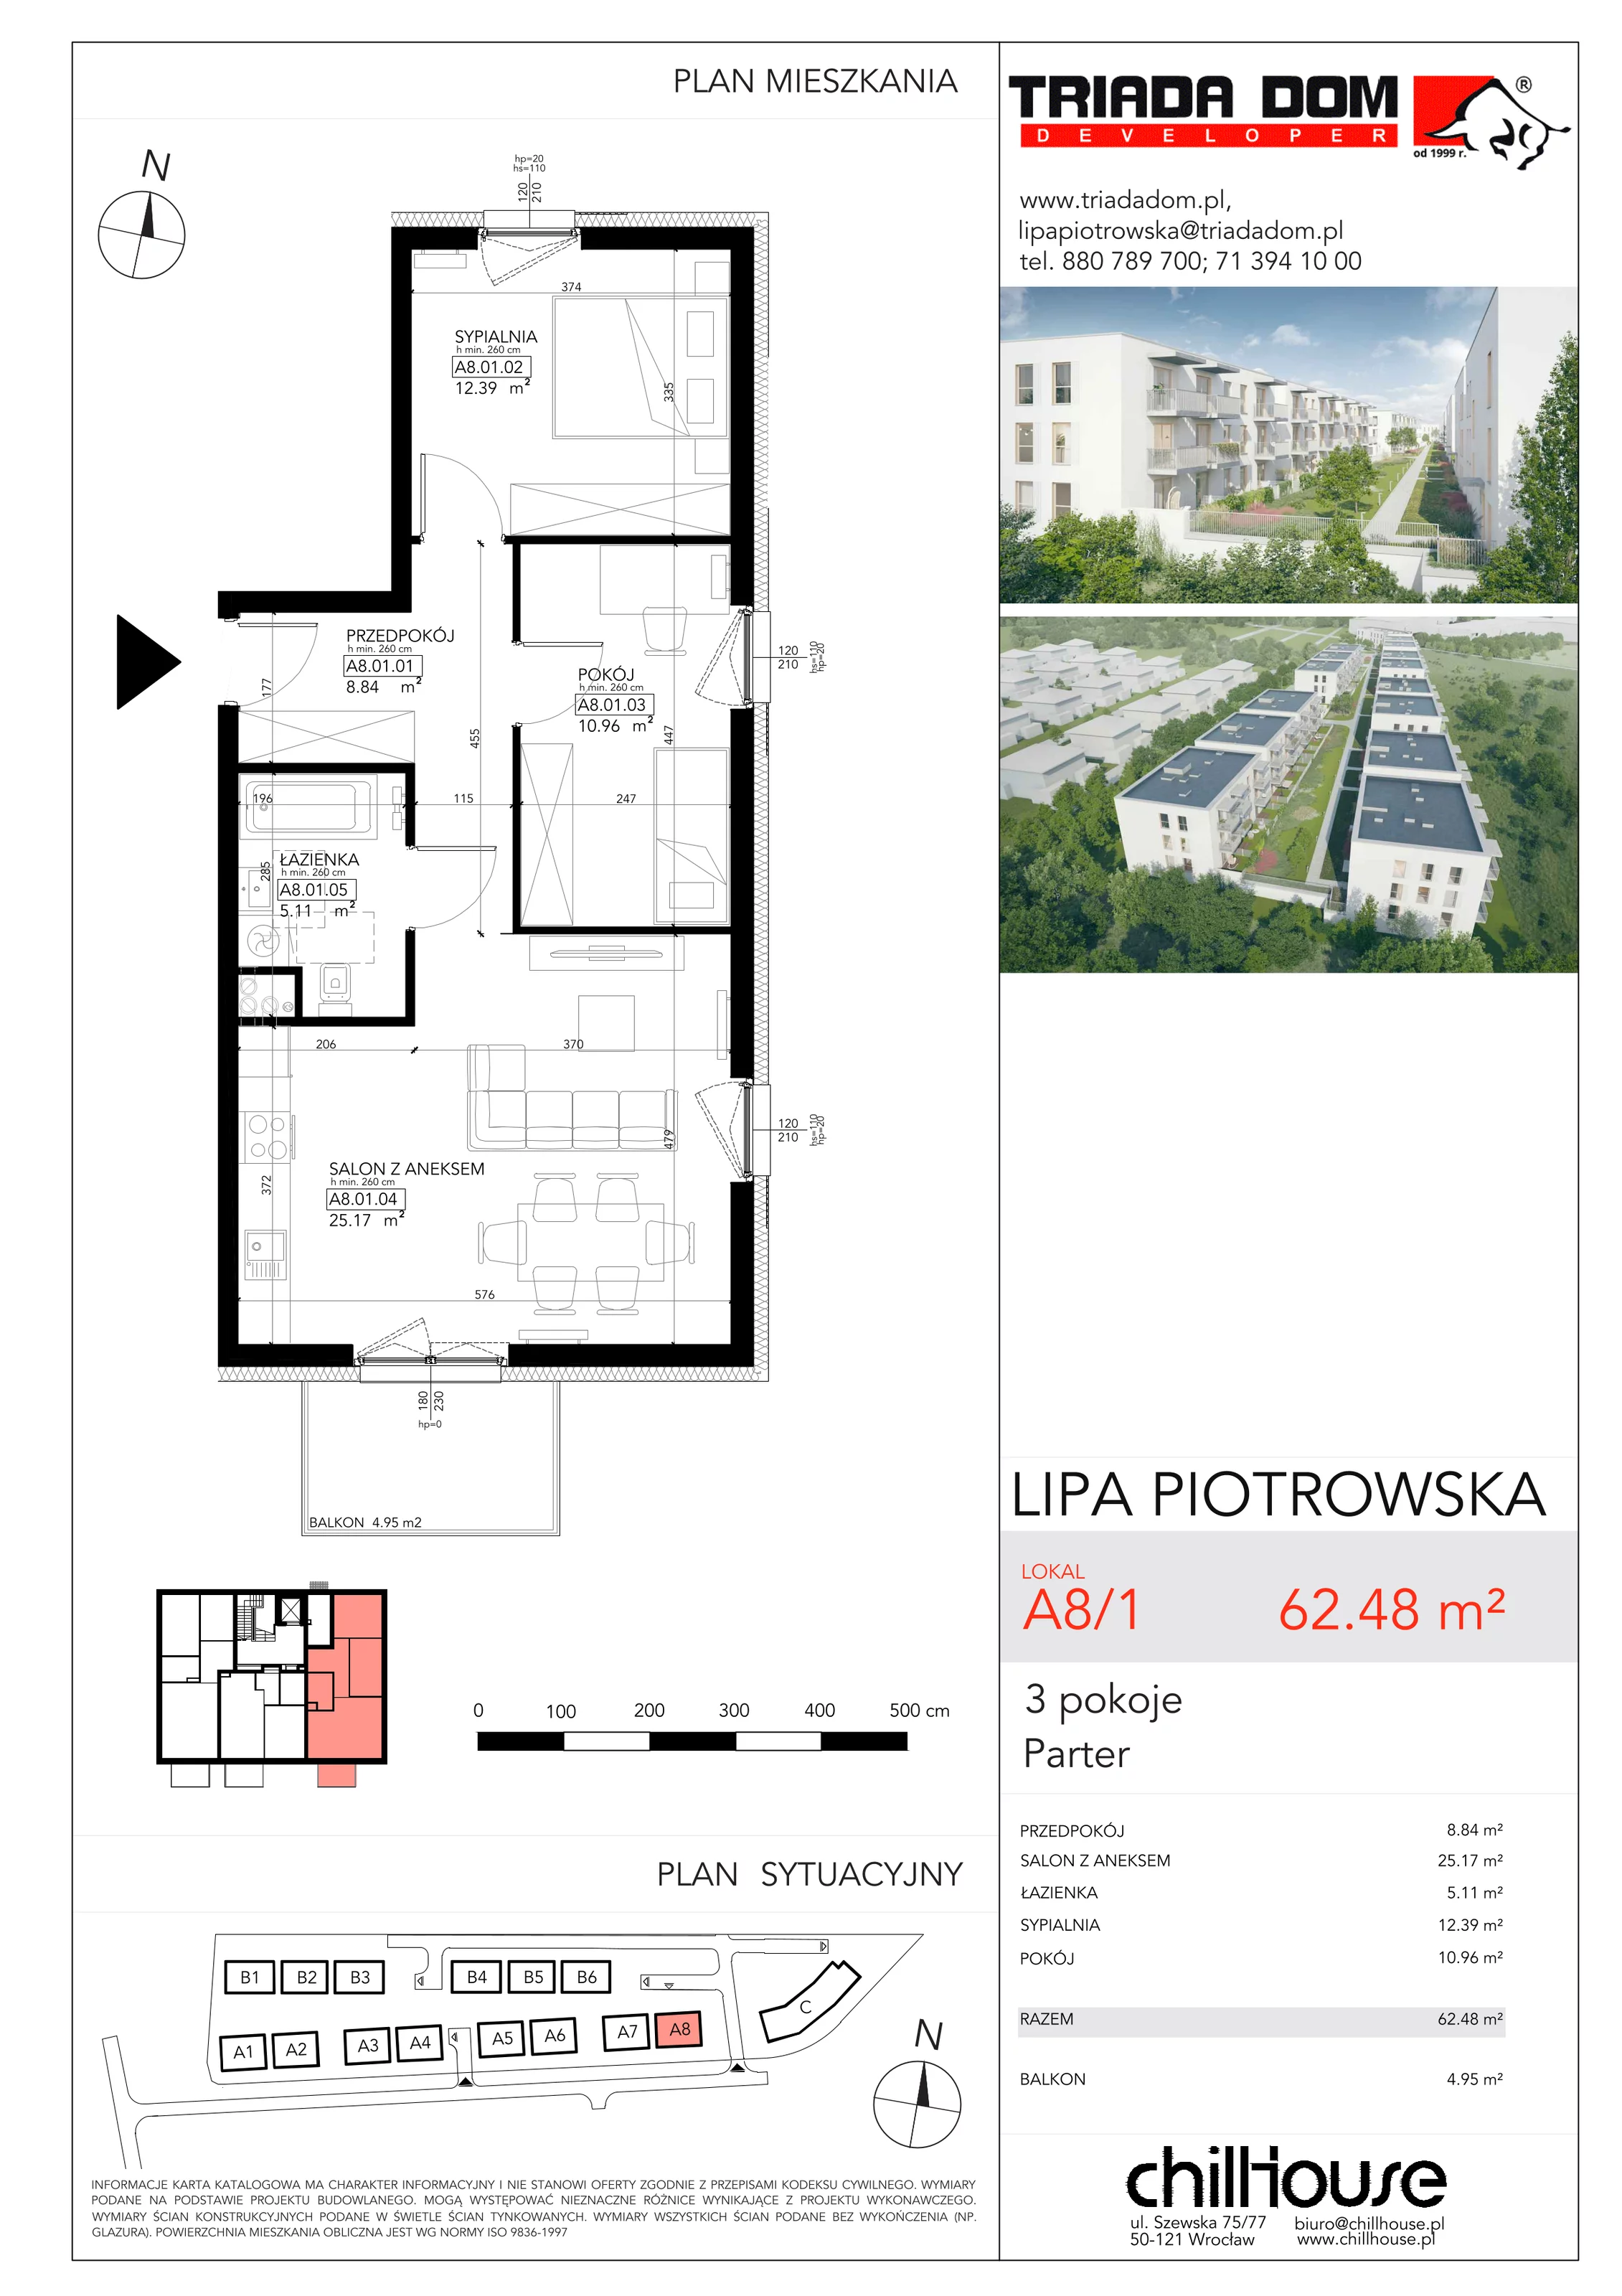 Mieszkanie 62,48 m², parter, oferta nr A81, Lipa Piotrowska, Wrocław, Lipa Piotrowska, ul. Lawendowa / Melisowa